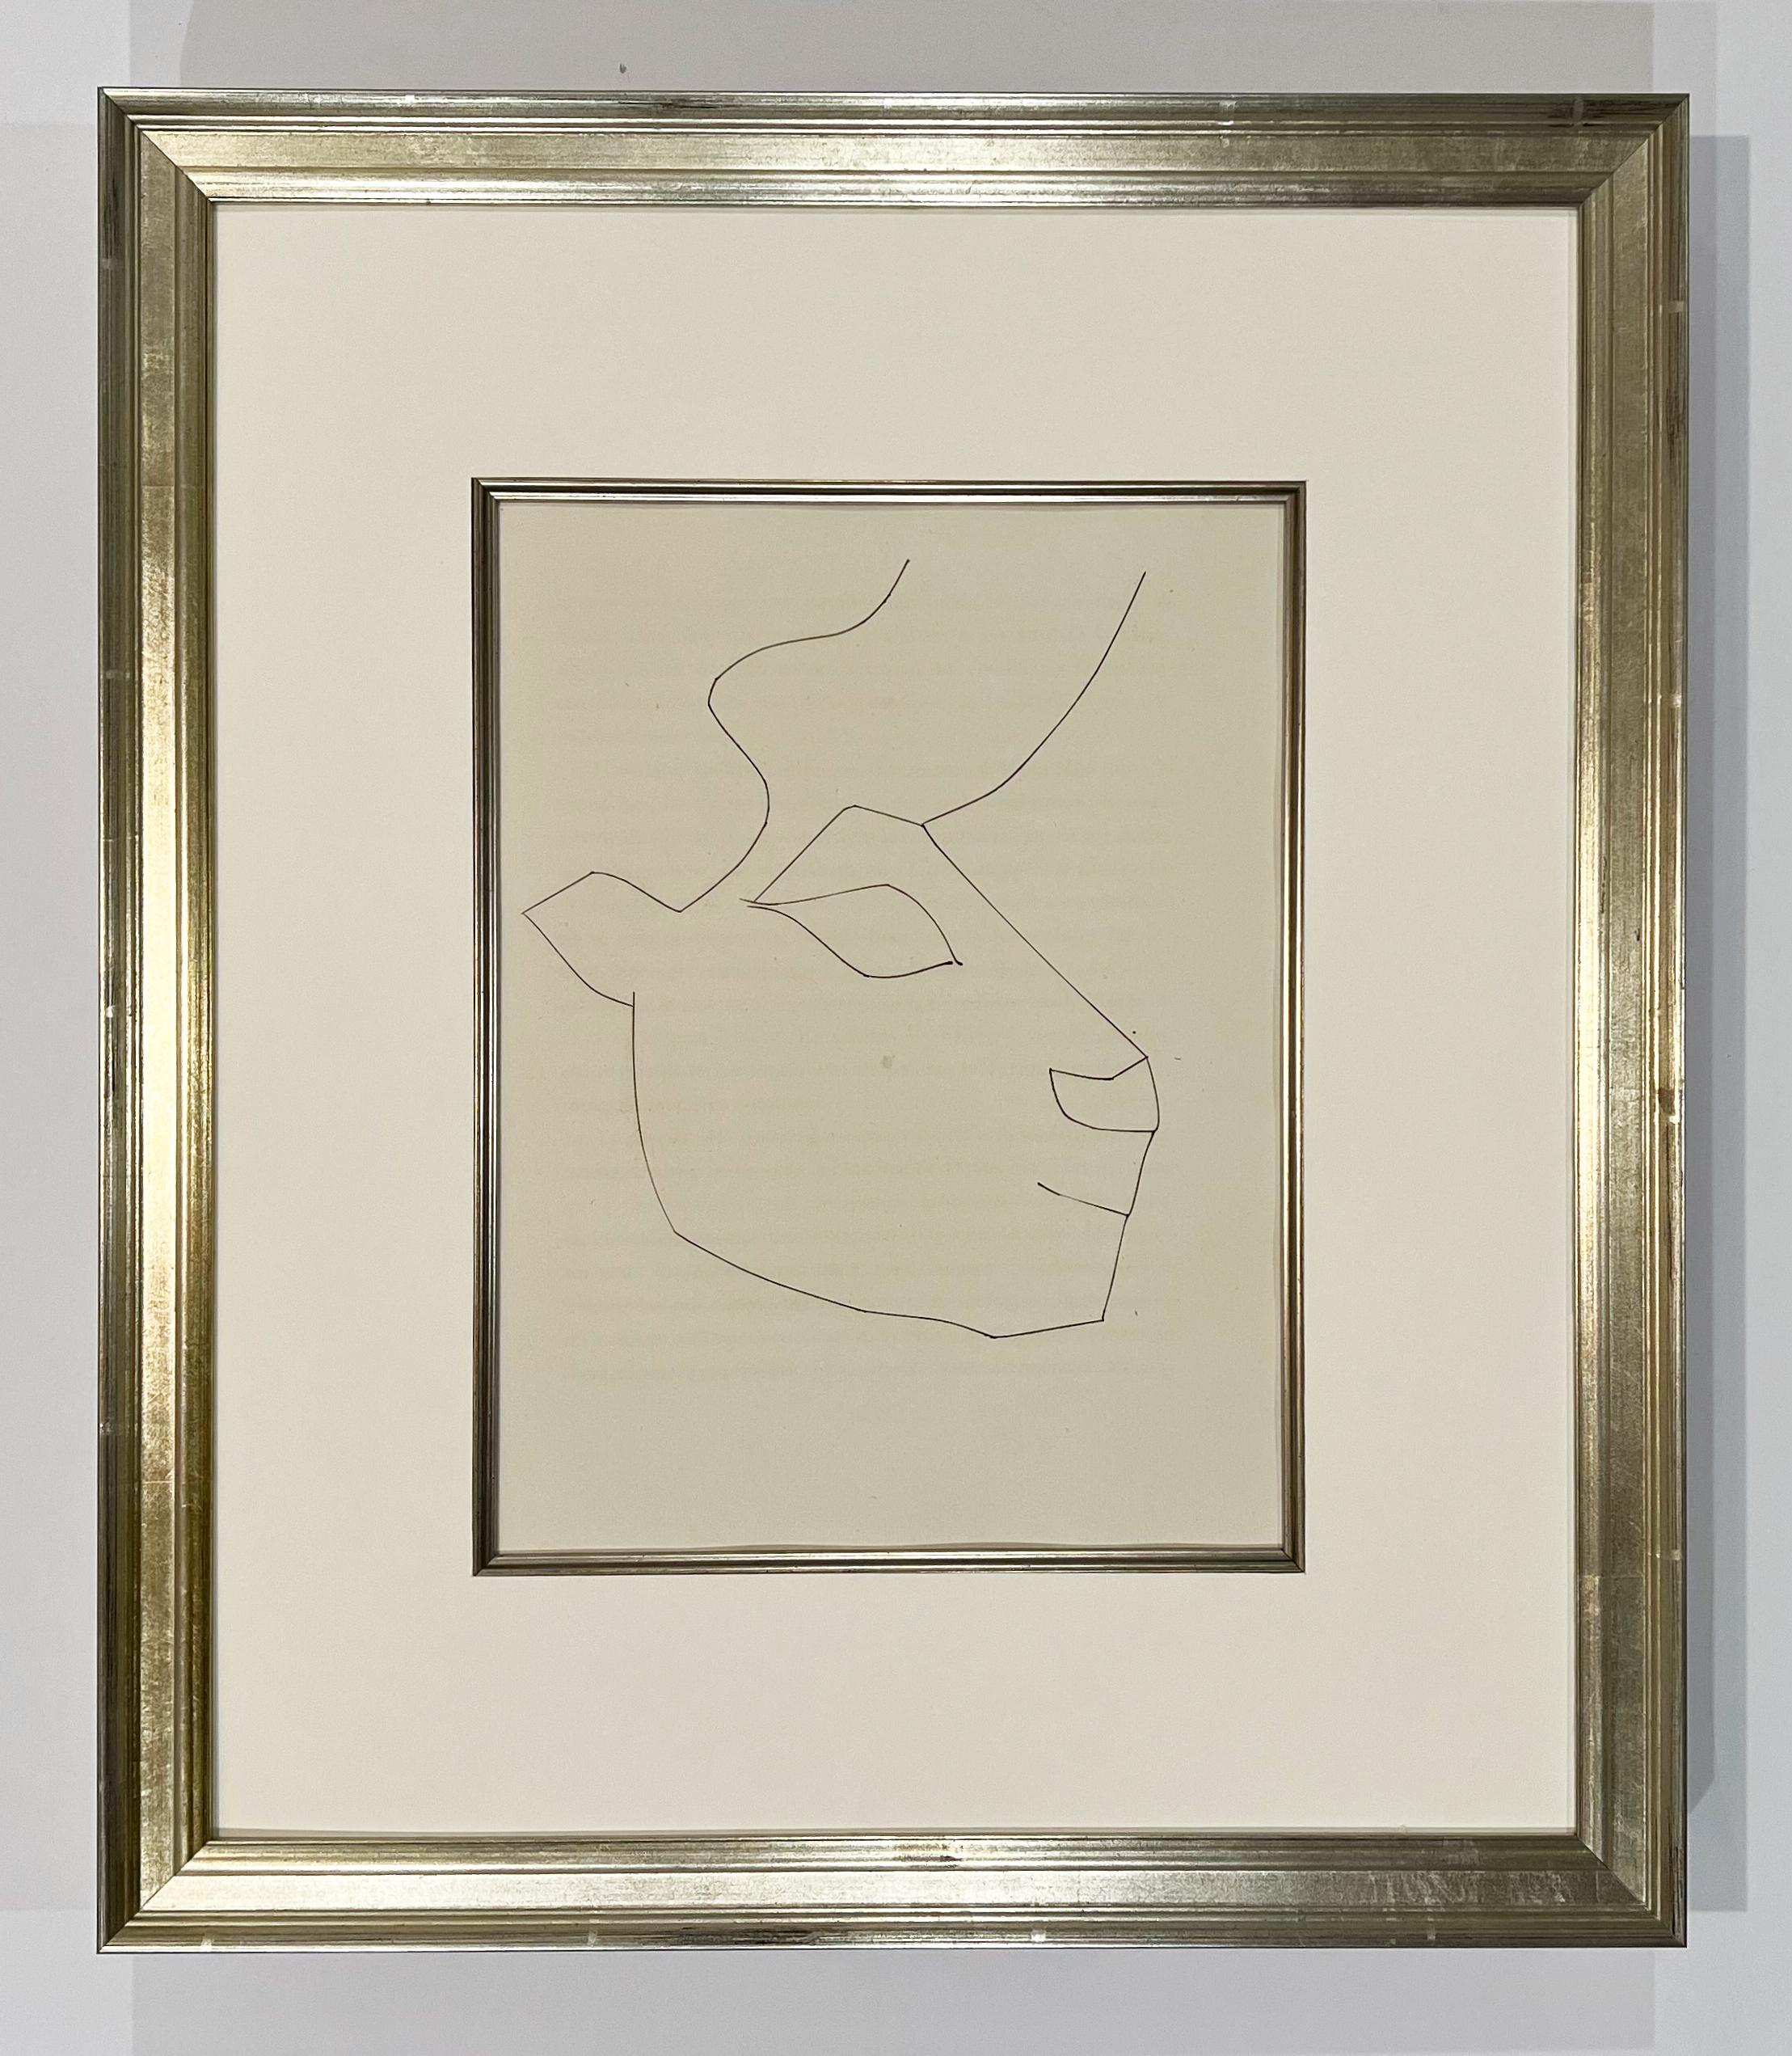 Tête de veau (plaque XXXVI), de Carmen - Print de Pablo Picasso